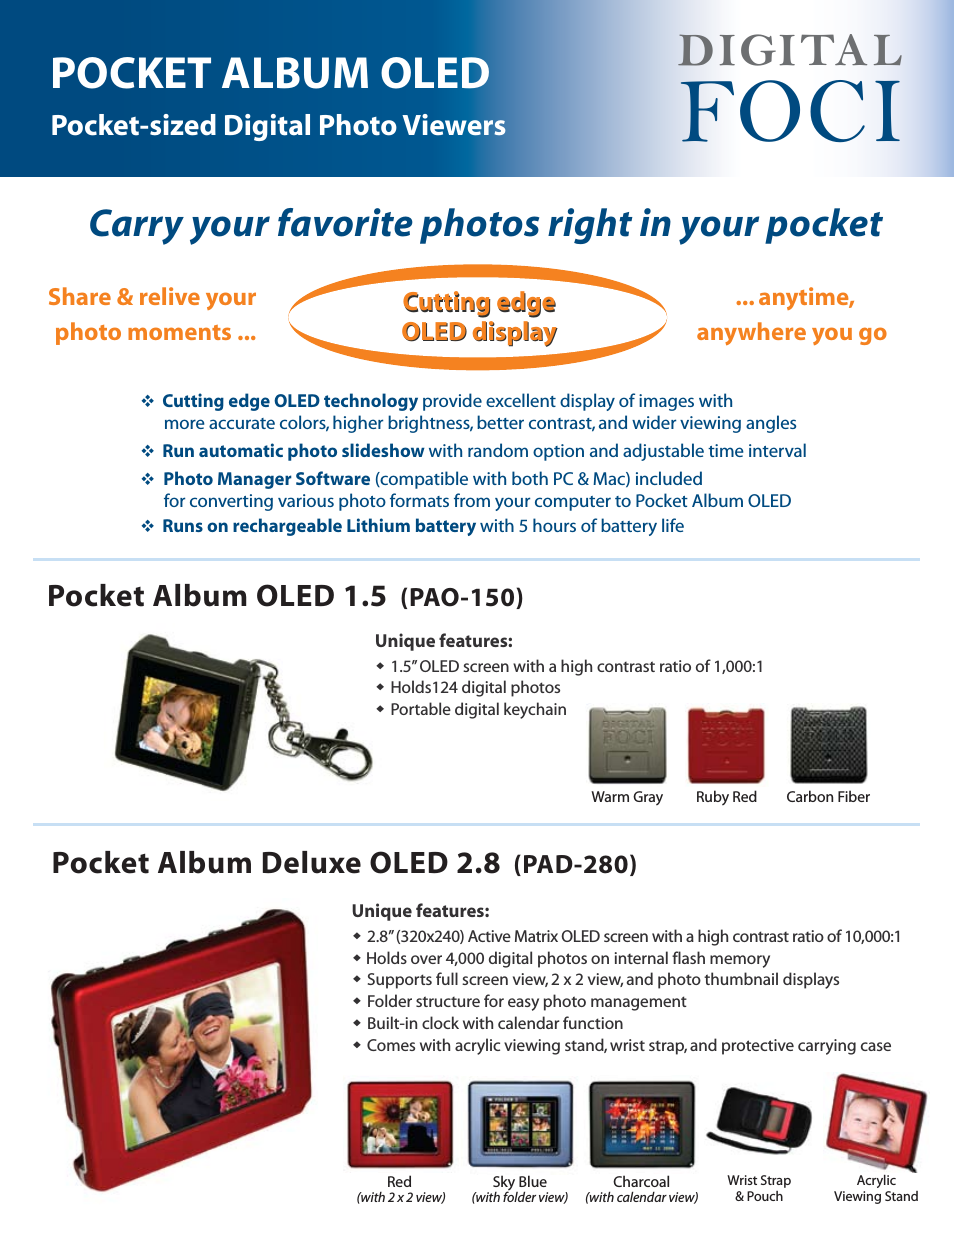 Pocket Album Deluxe OLED 2.8 PAD-280